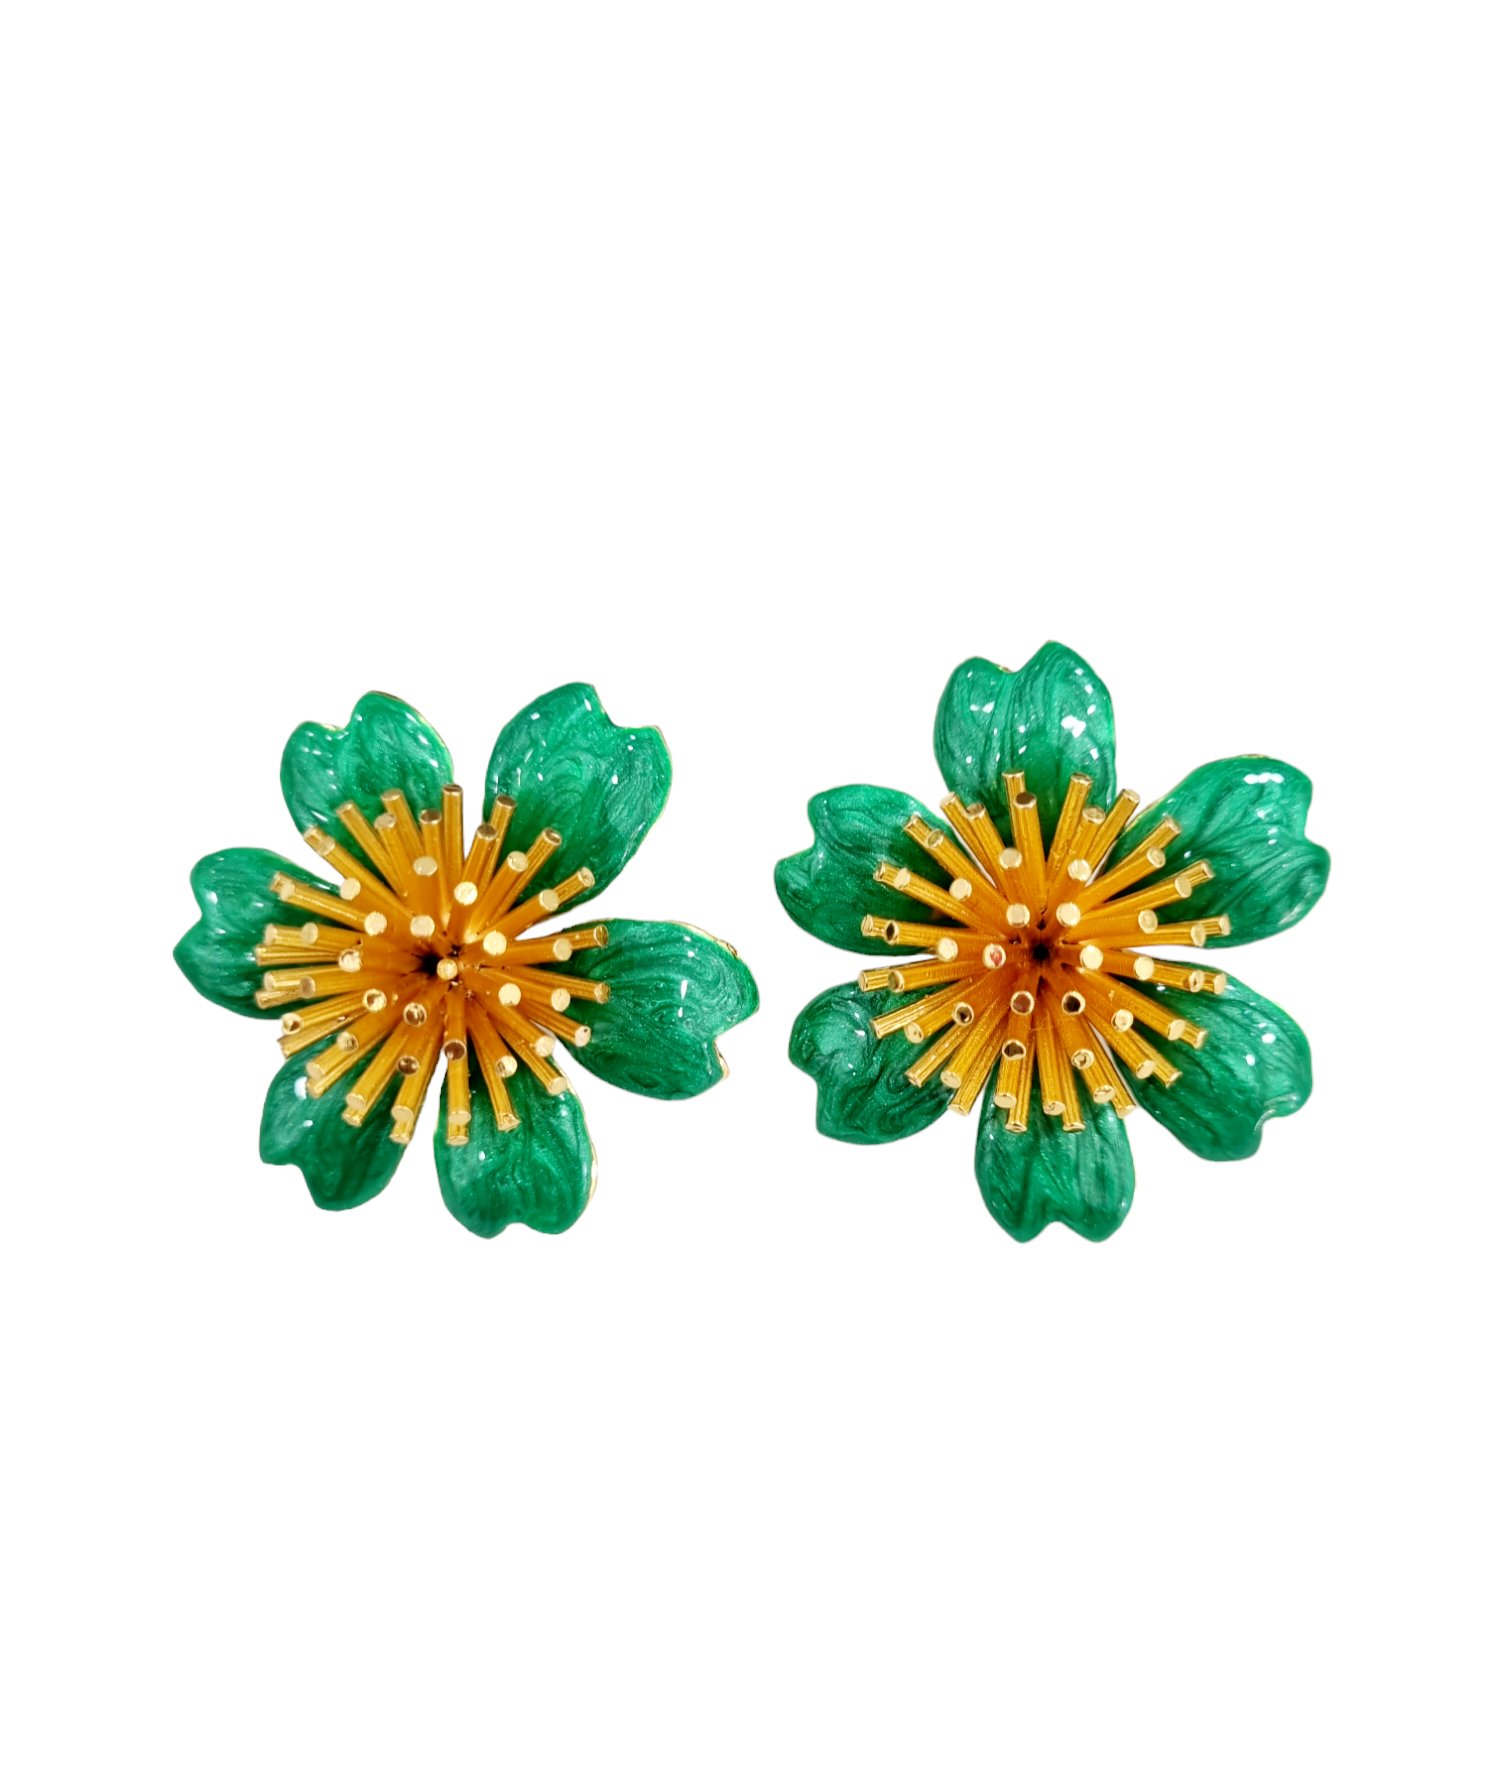 Boucles d'oreilles lobe réalisées avec des fleurs en laiton émaillé vert Poids 15g Longueur 2cm Taille 4cm